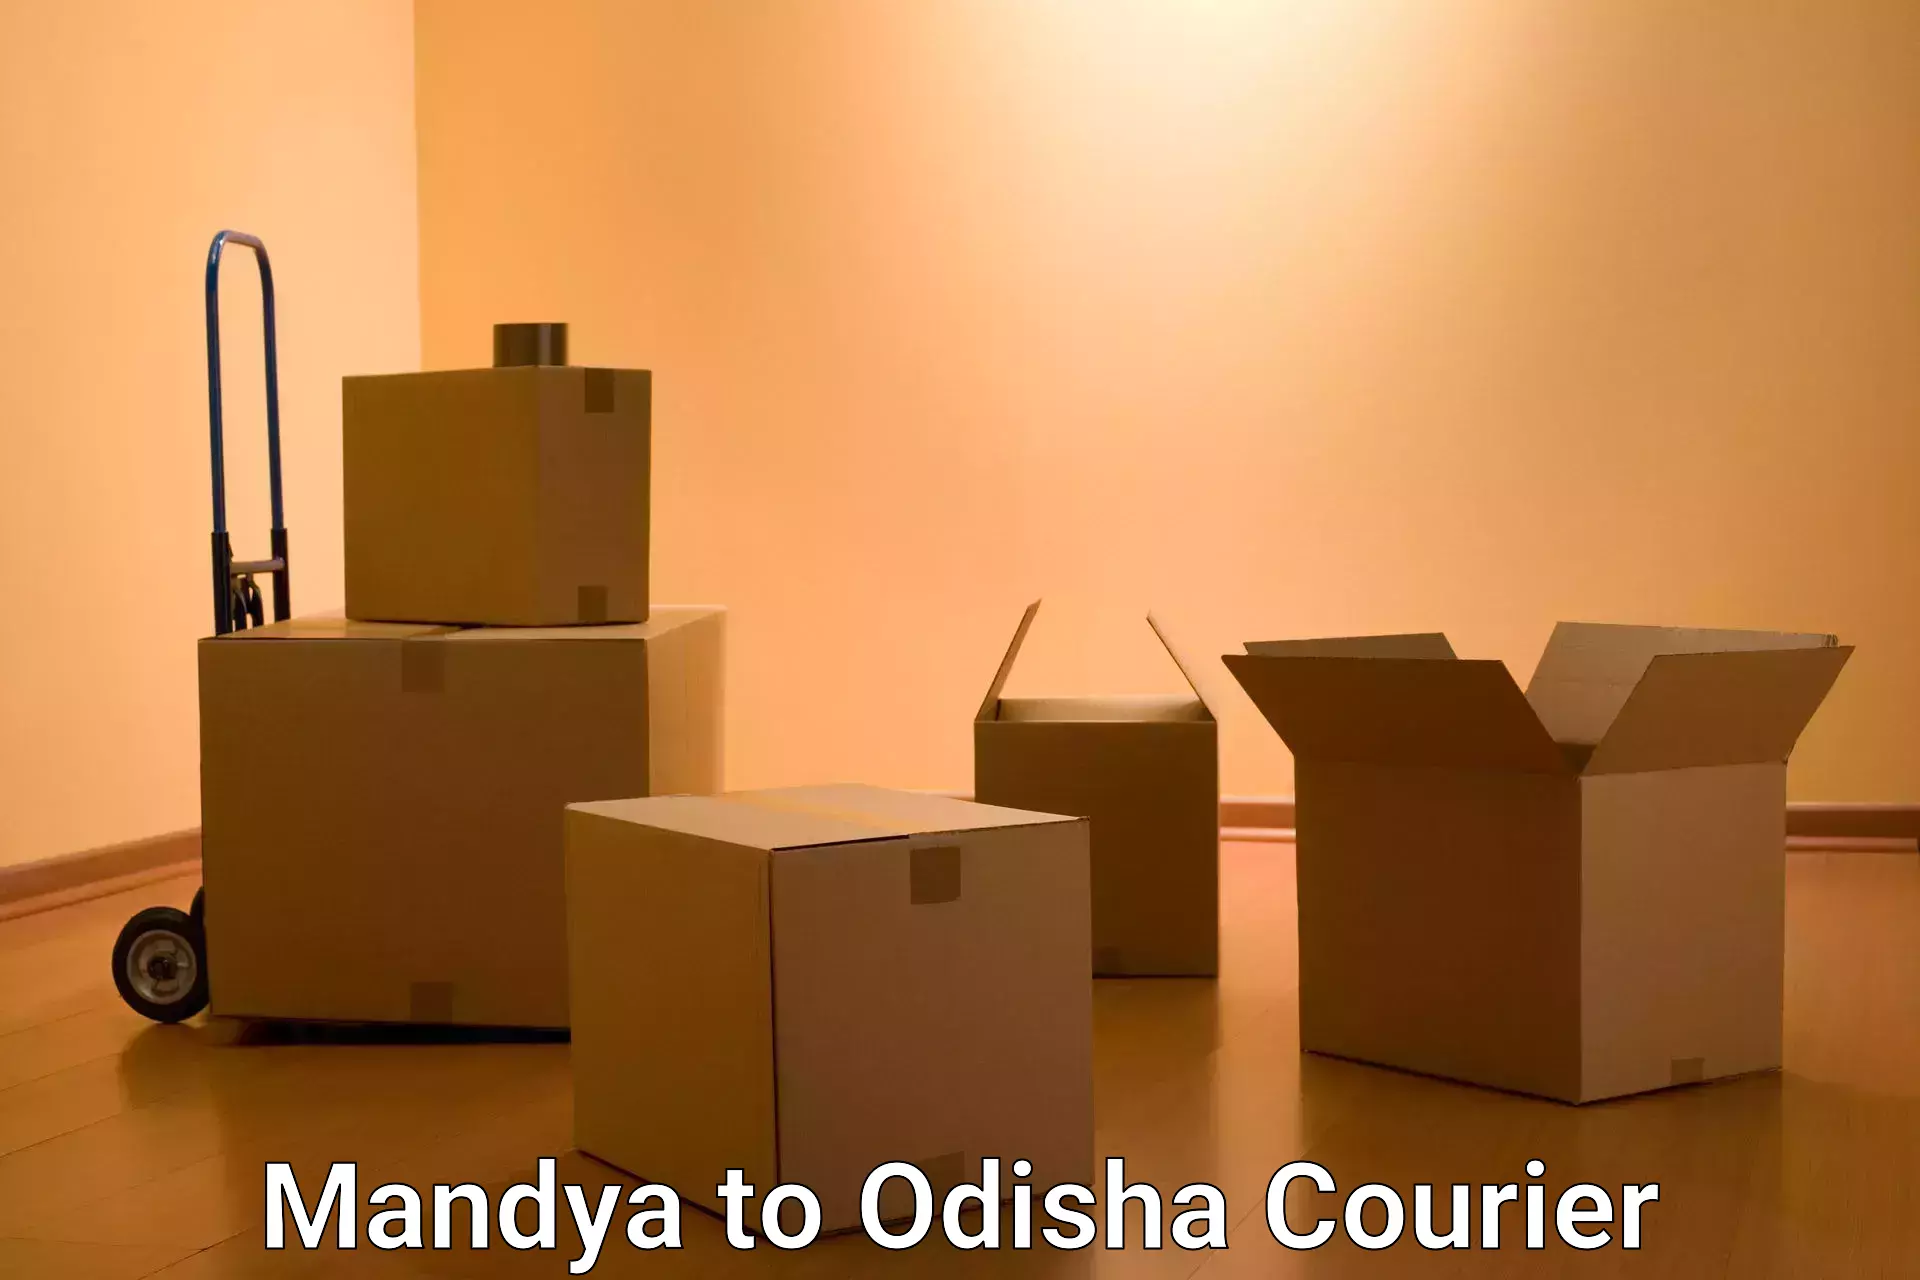 Global shipping solutions Mandya to Odisha